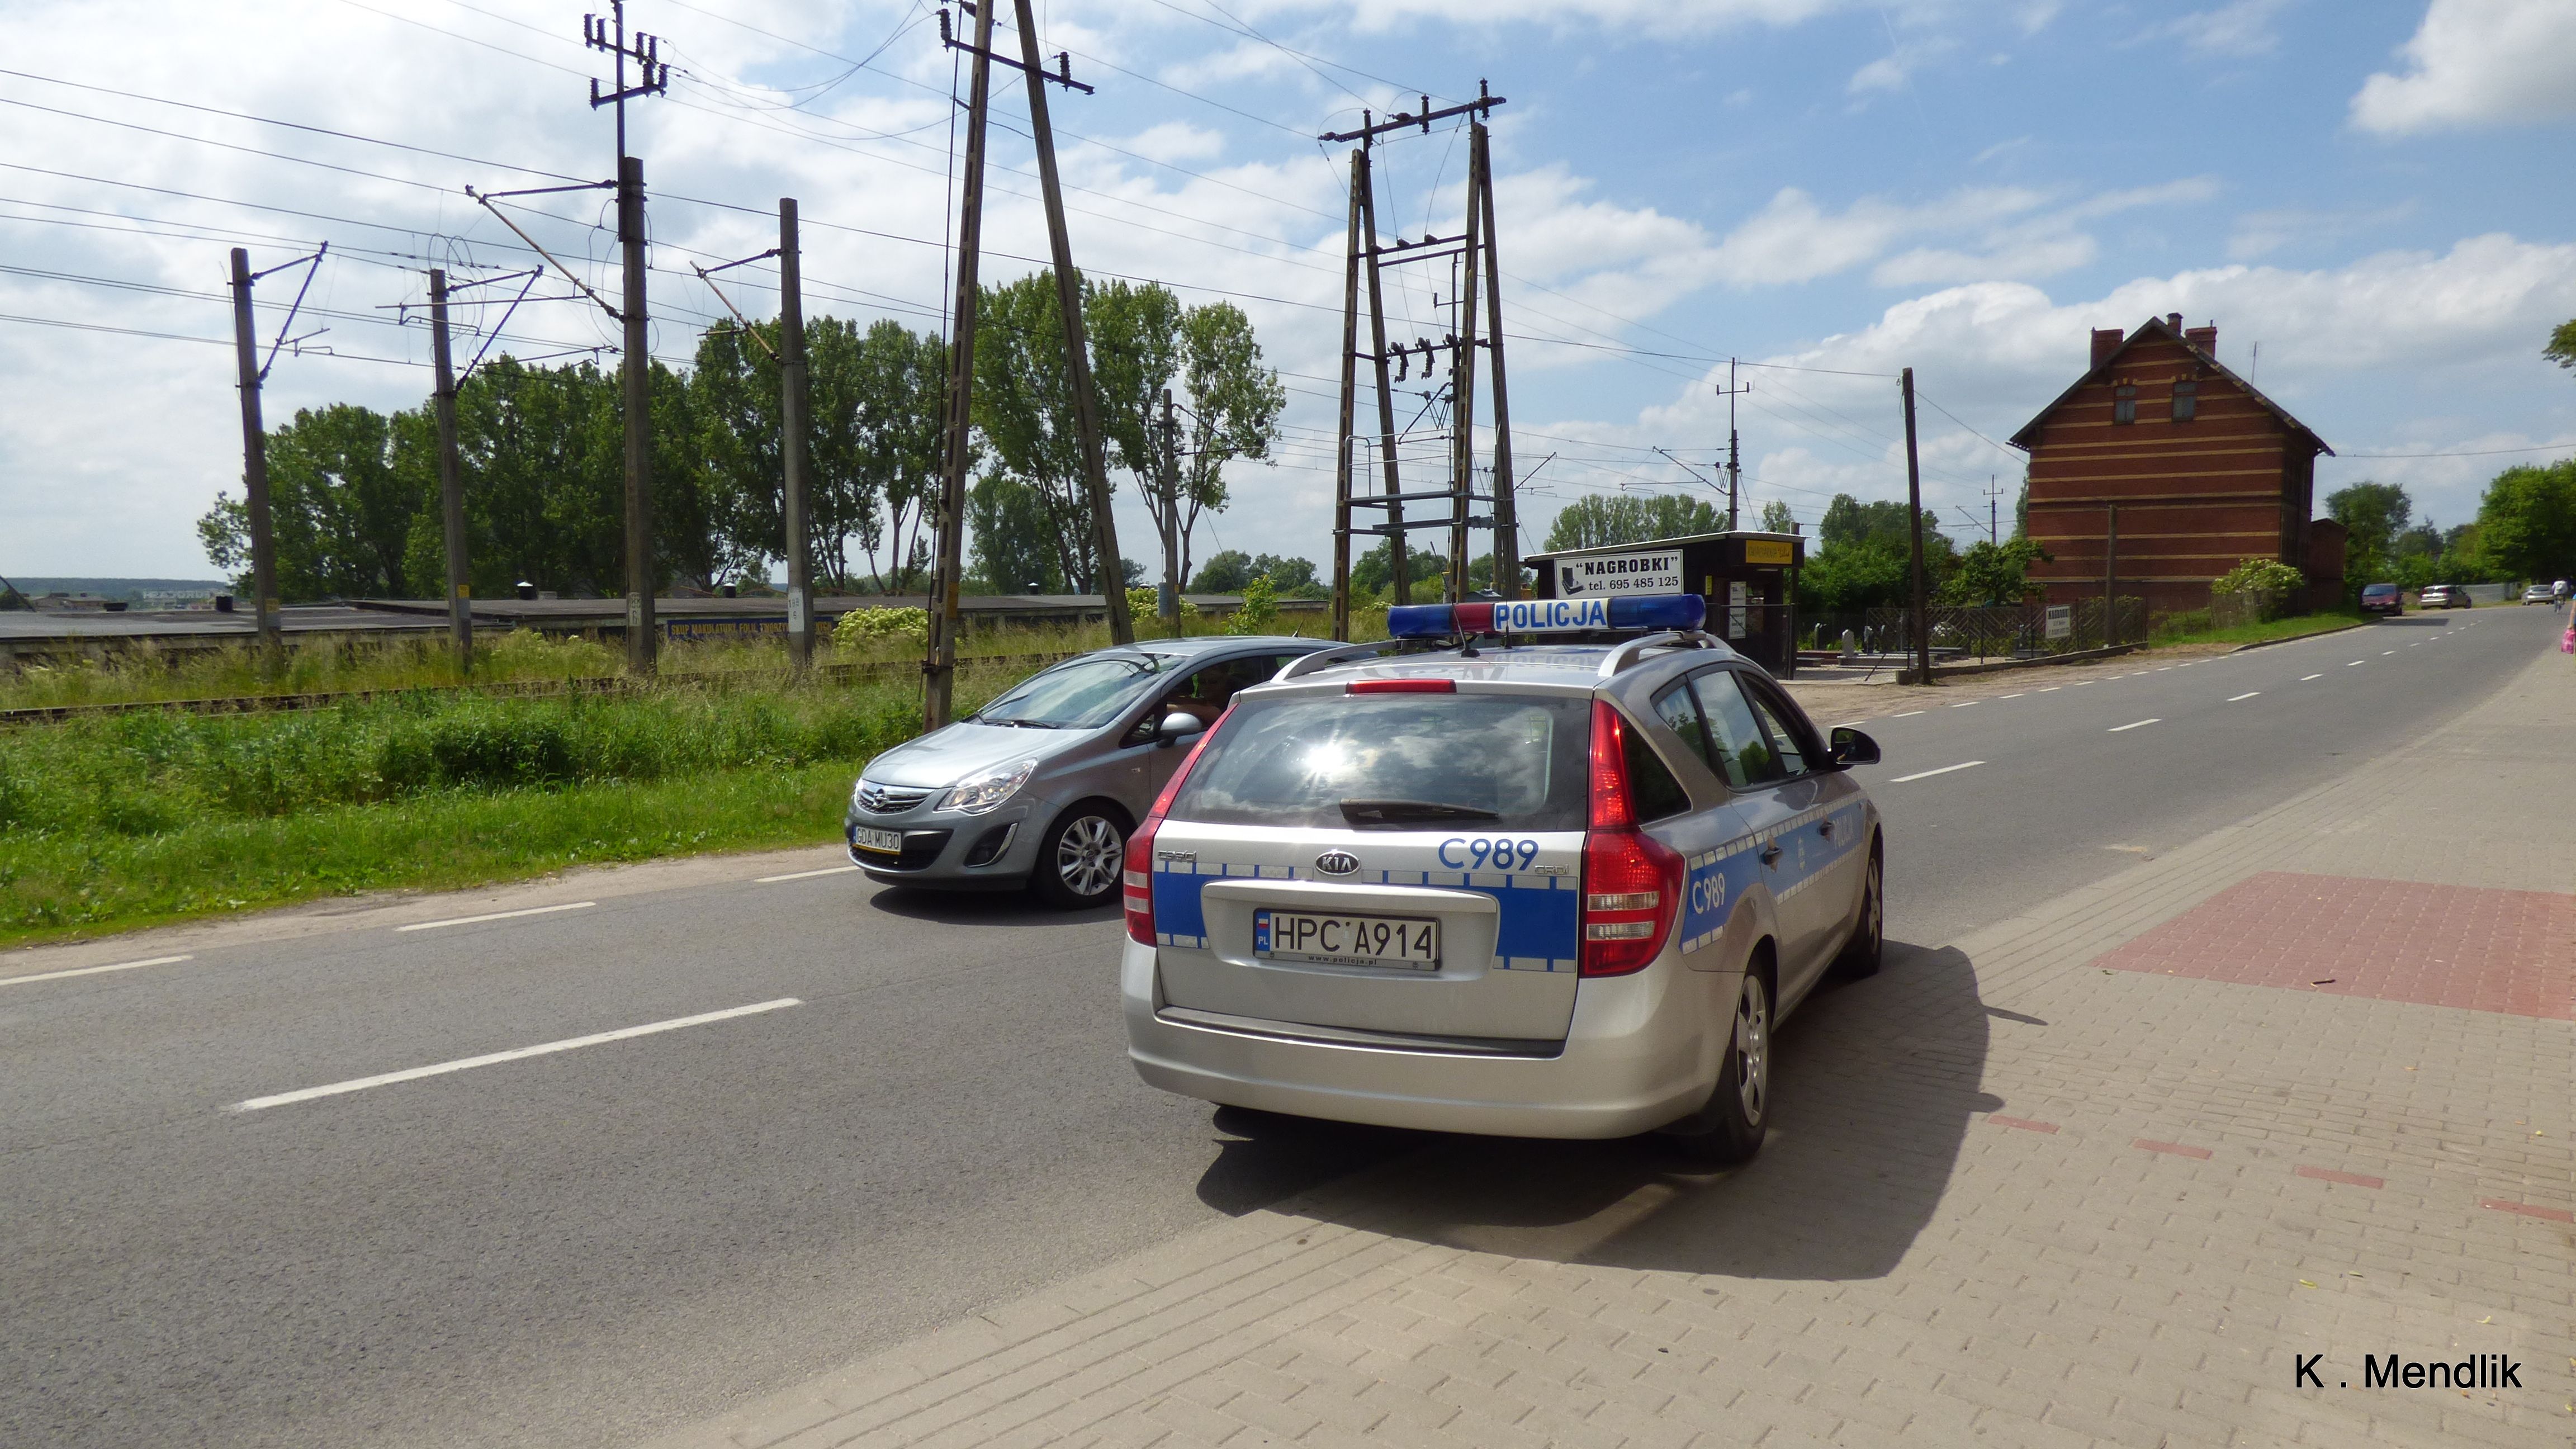 Radiowóz policji i zatrzymany samochód